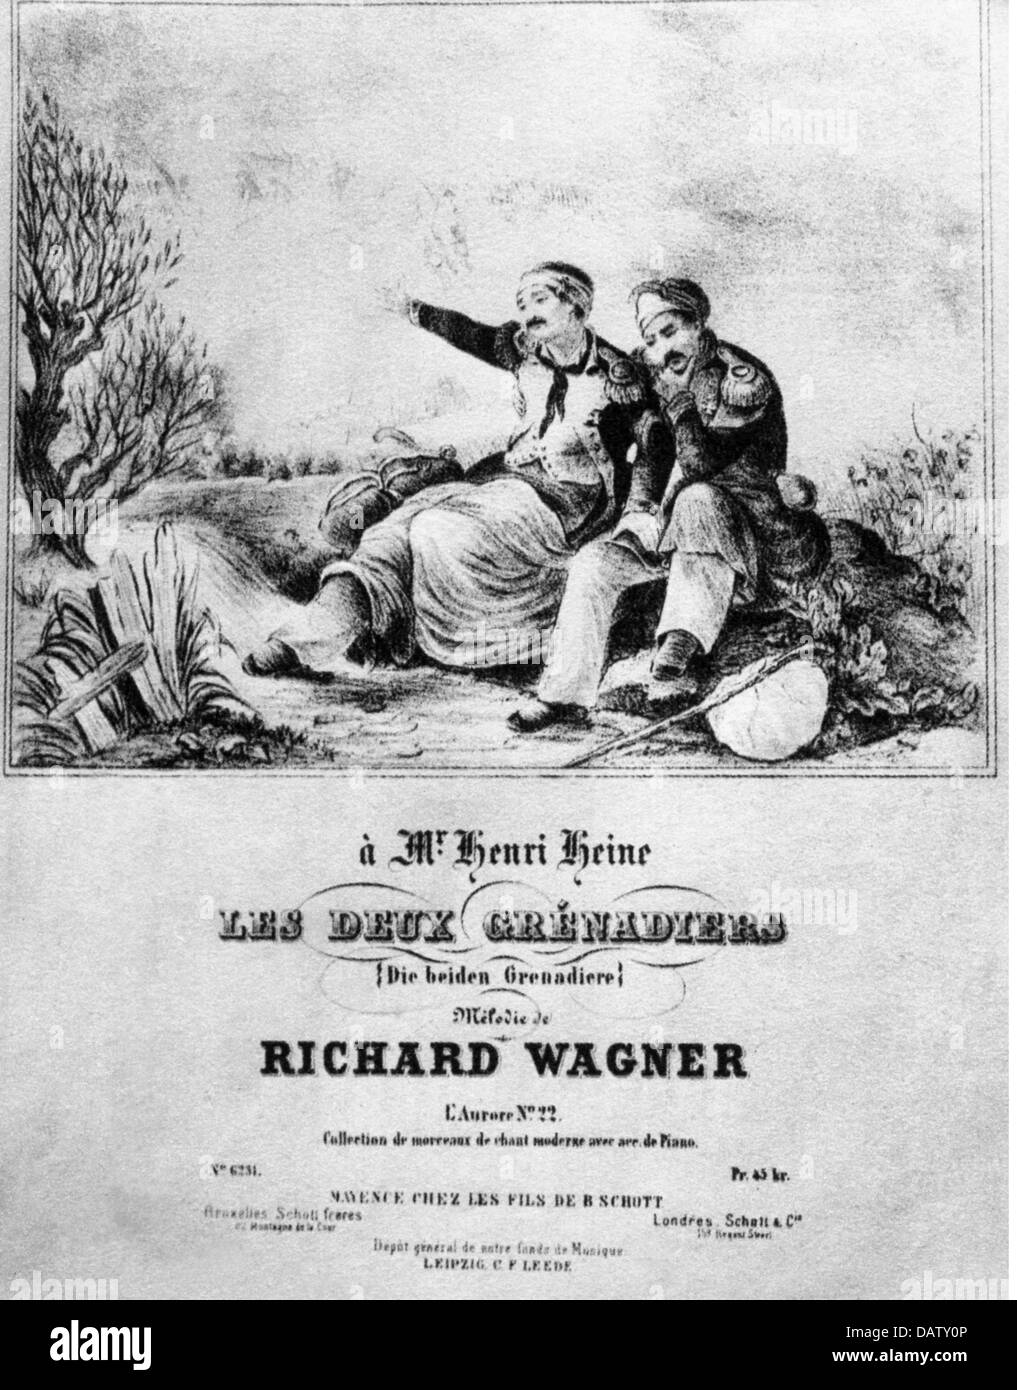 Wagner, Richard, 22.5.1813 - 13.2.1883, compositore tedesco, 'Les deux Grenadiers' (I Due Grendiers), versione musicale della ballata di Heinrich Heine (1797 - 1856), titolo, disegno di E.B.Kietz, editori Söhne di B.Schott, Magonza, 1840, Foto Stock